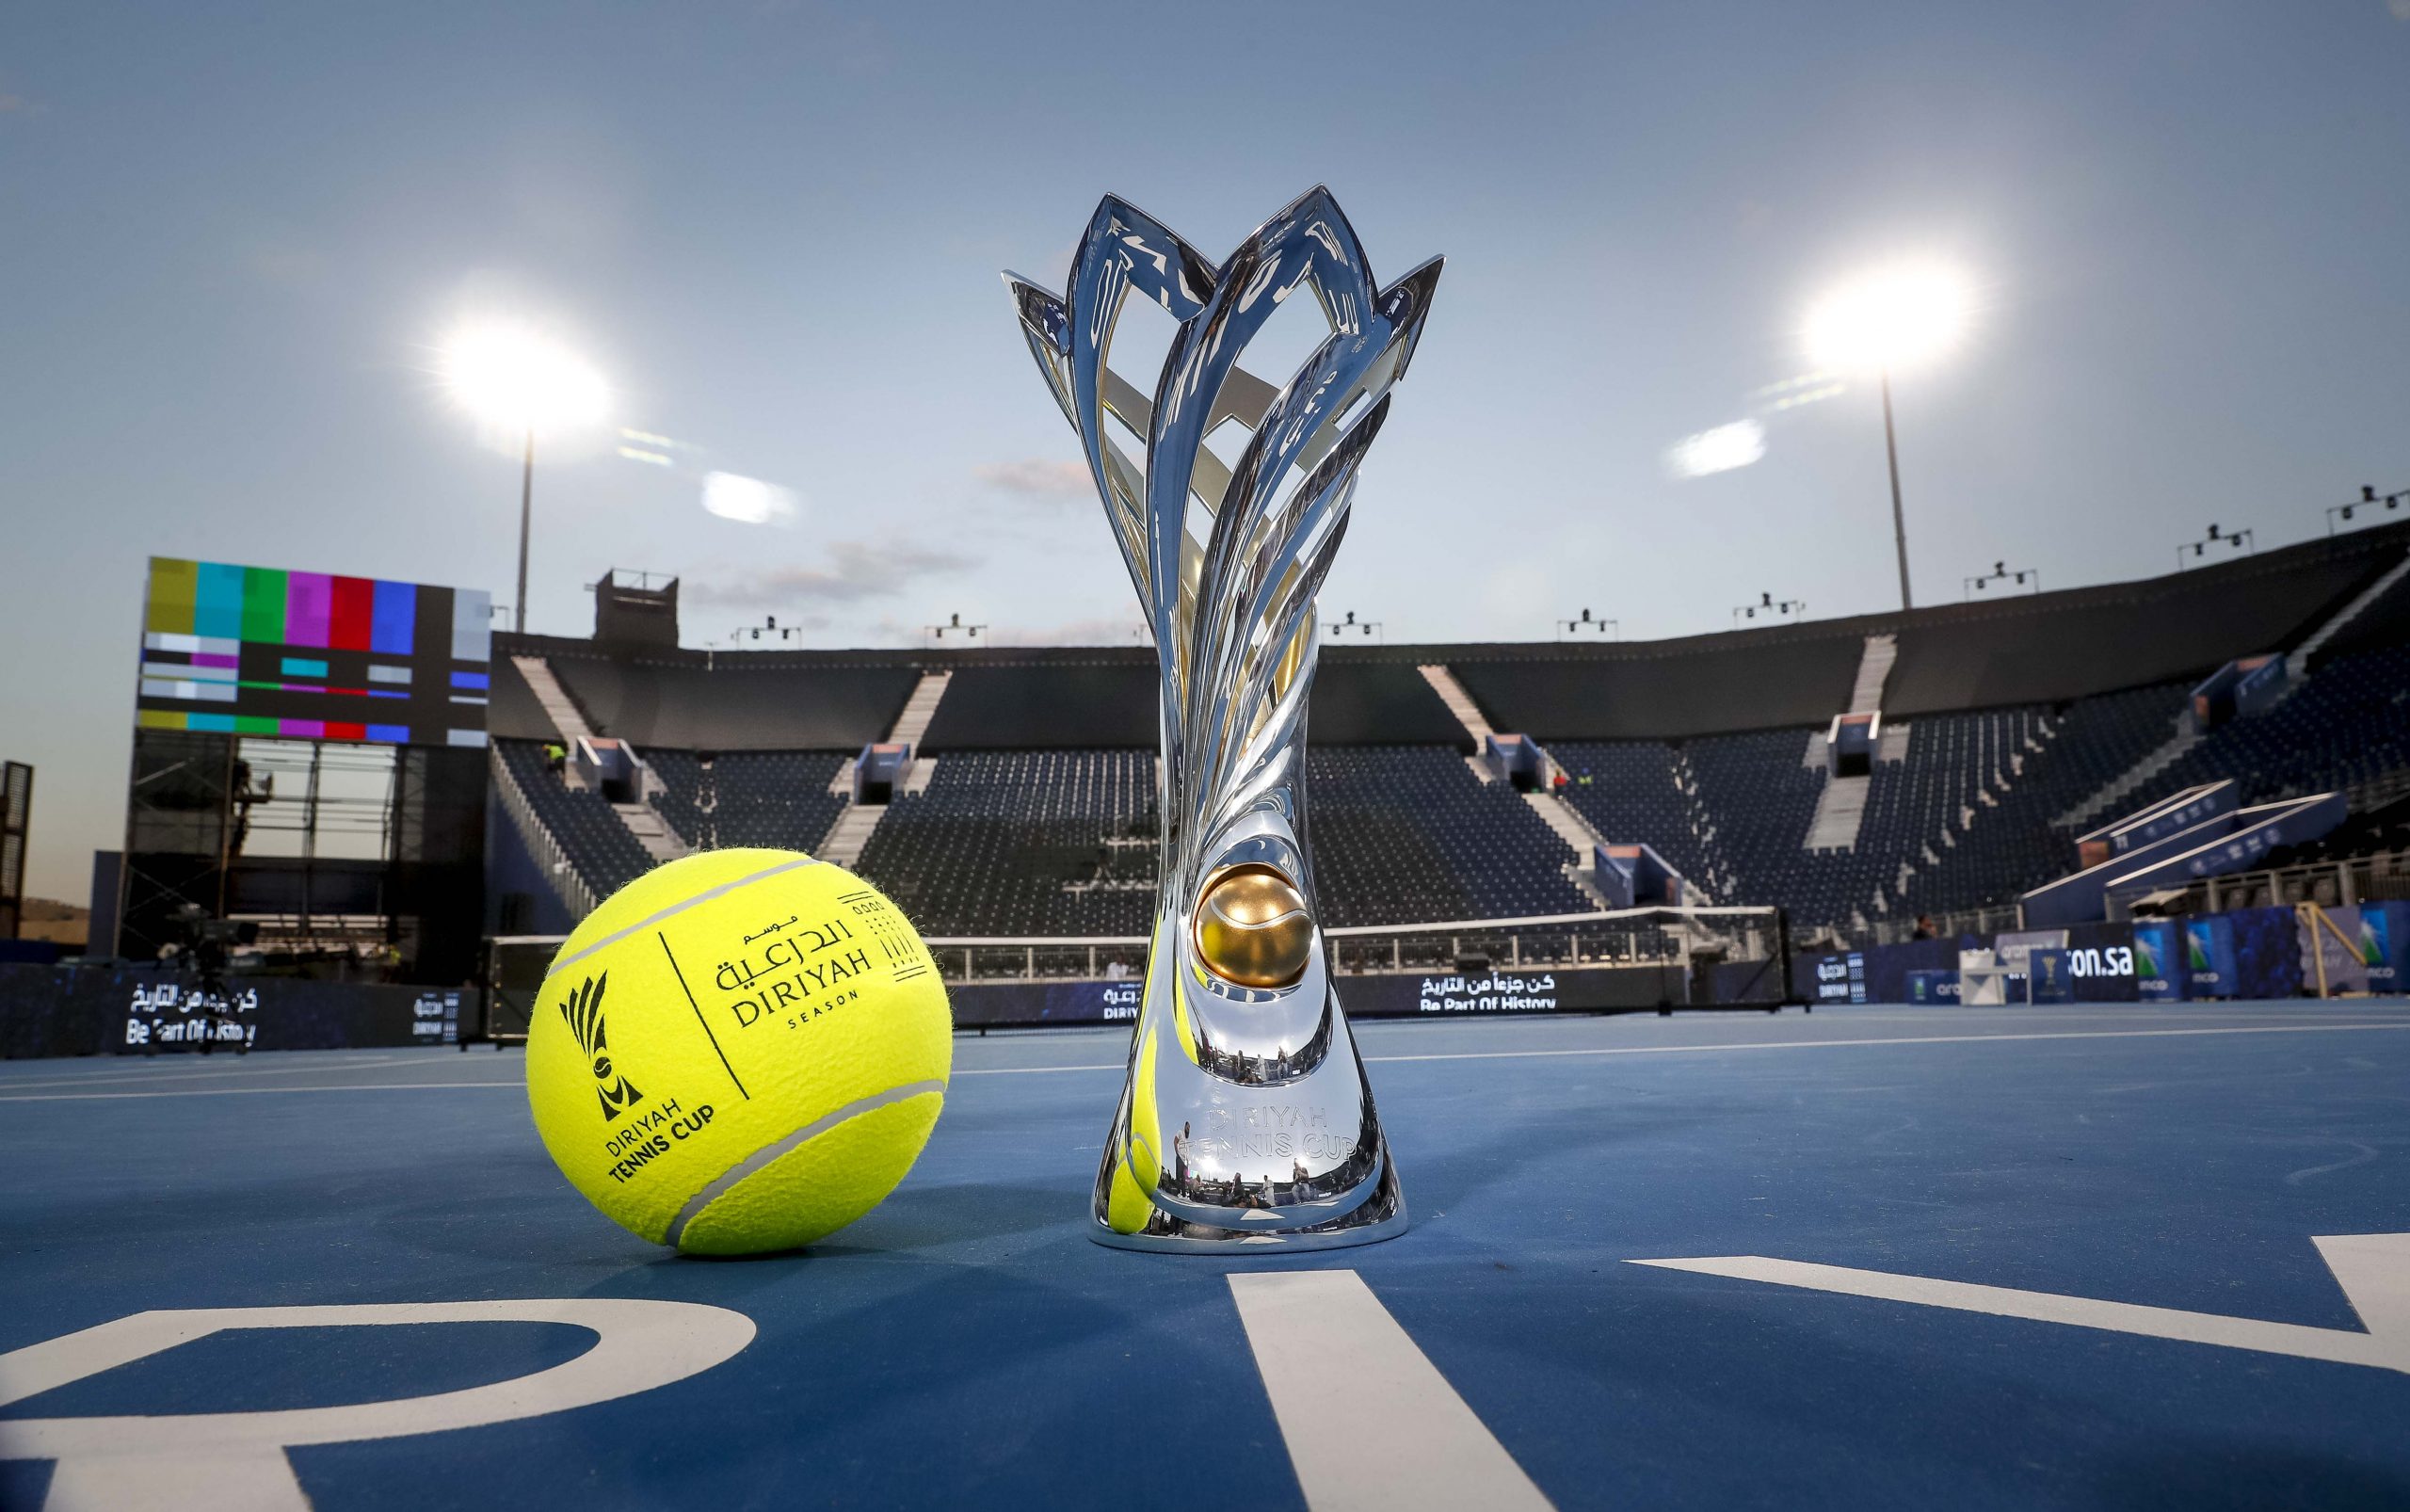 نجوم التنس متحمسون لصنع التاريخ عشية افتتاح بطولة كأس الدرعية للتنس 9